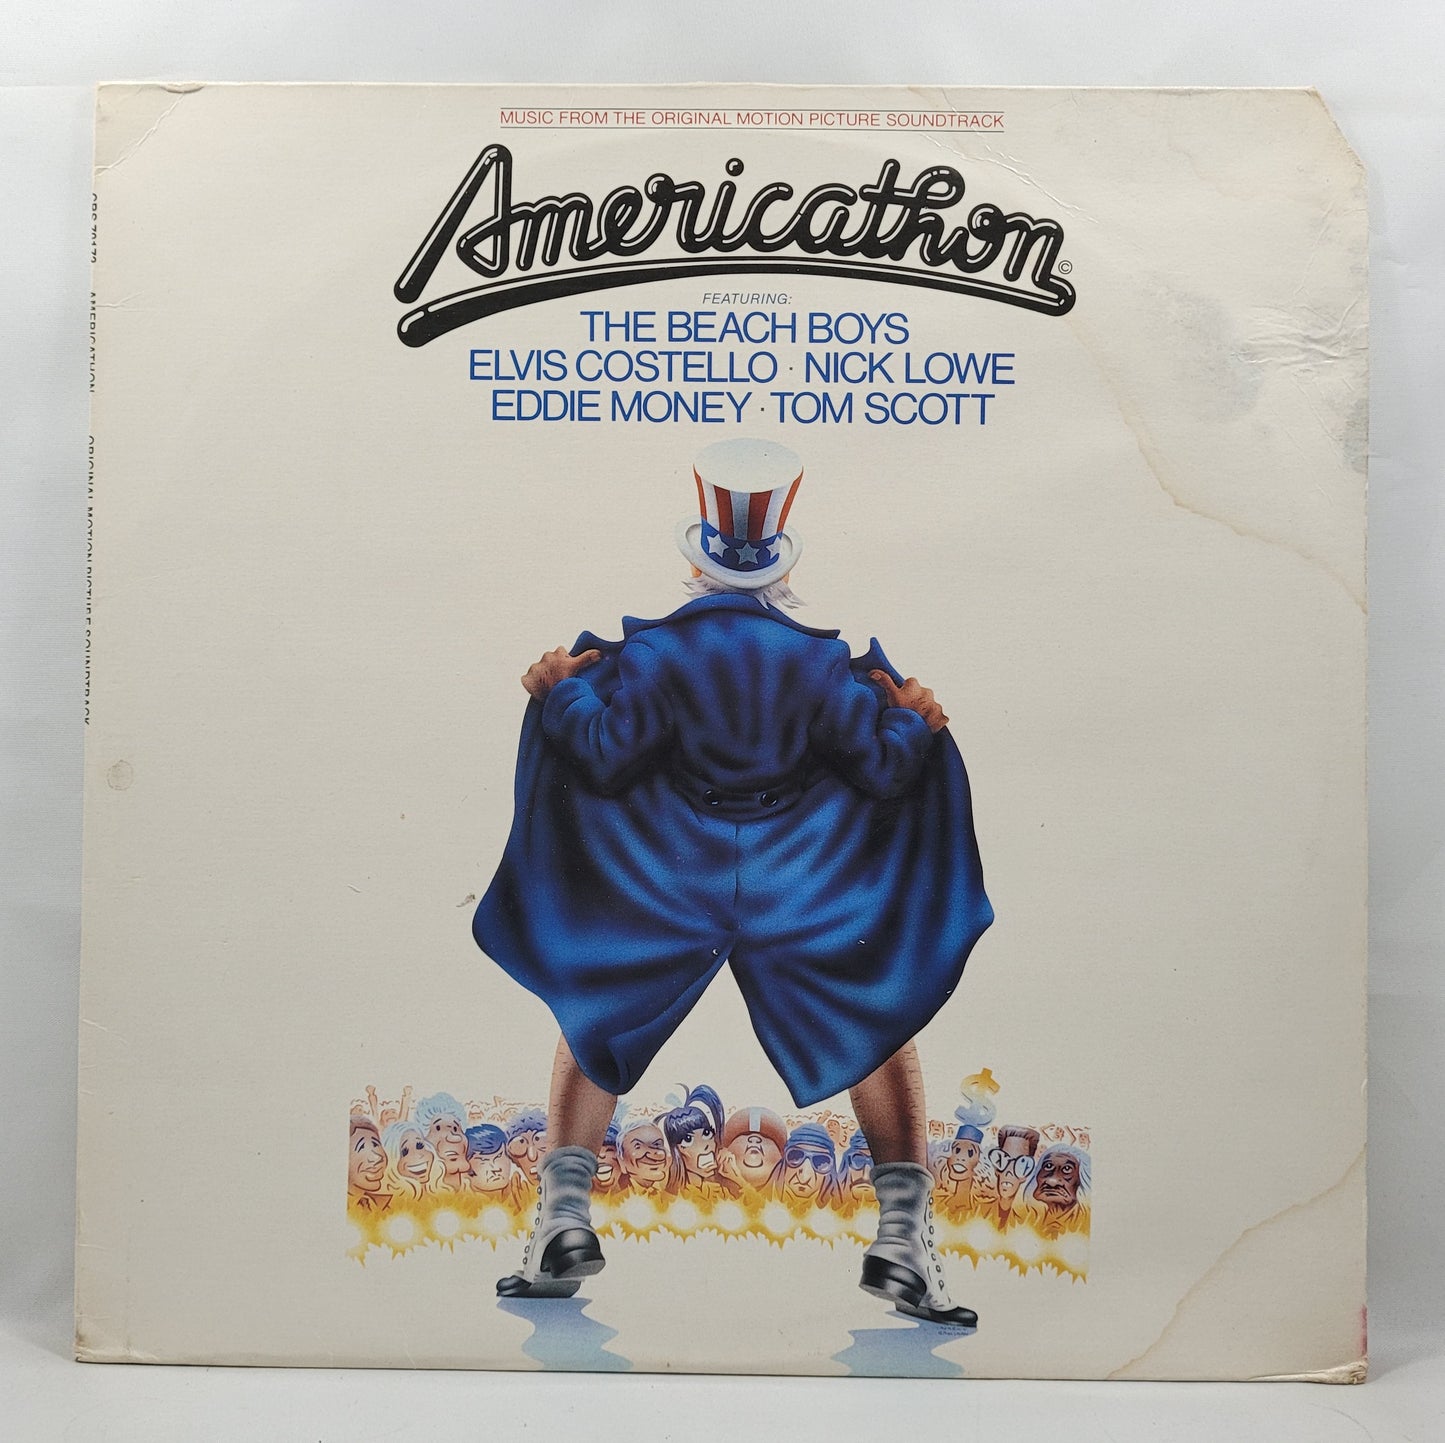 Soundtrack - Americathon [1979 Used Vinyl Record LP]